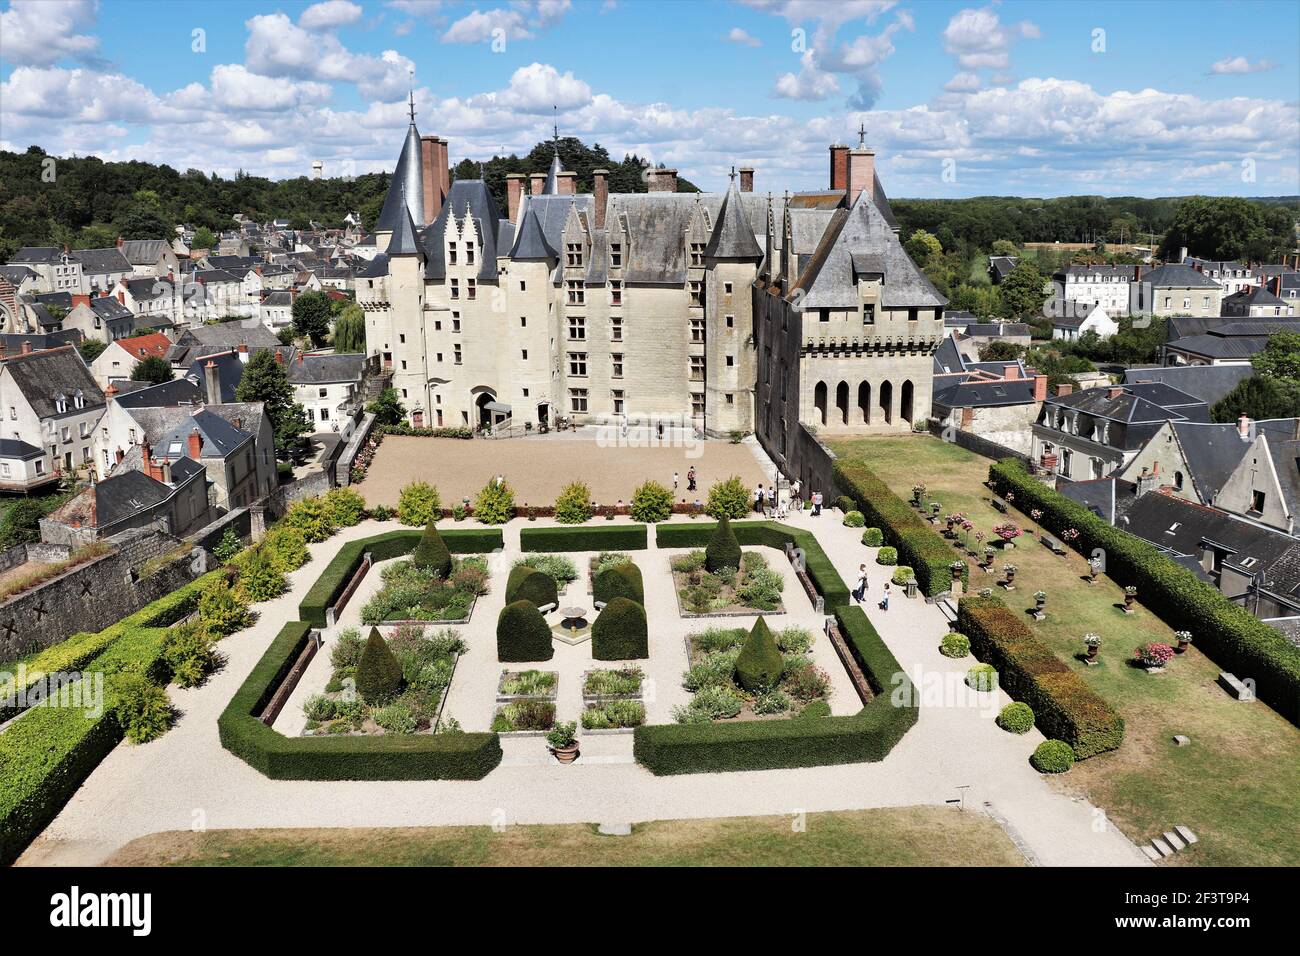 Château de Langeais, Vallée de la Loire, France Banque D'Images